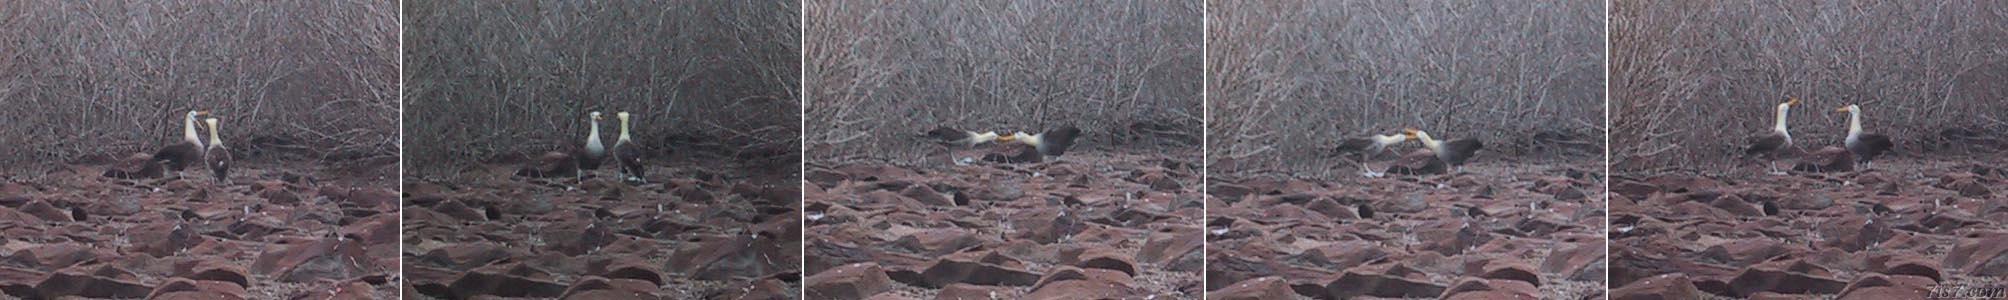 Albatross Mating Ritual